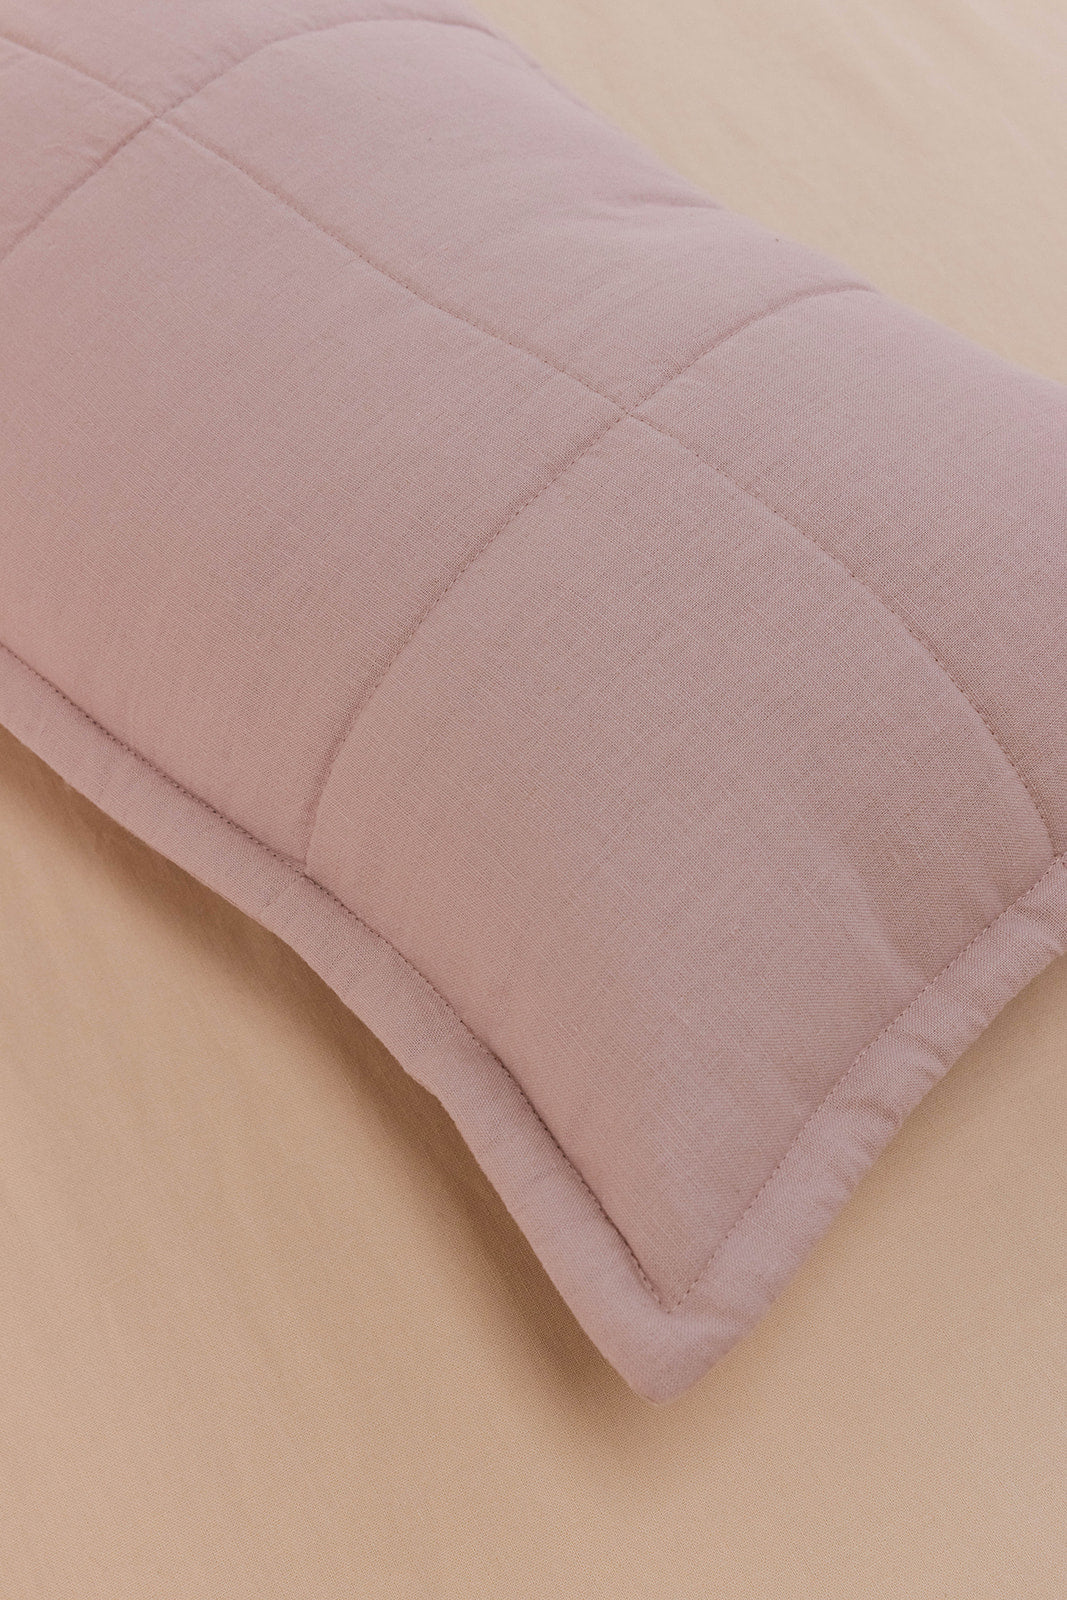 Songbird - Linen Quilted Sham & Pillow